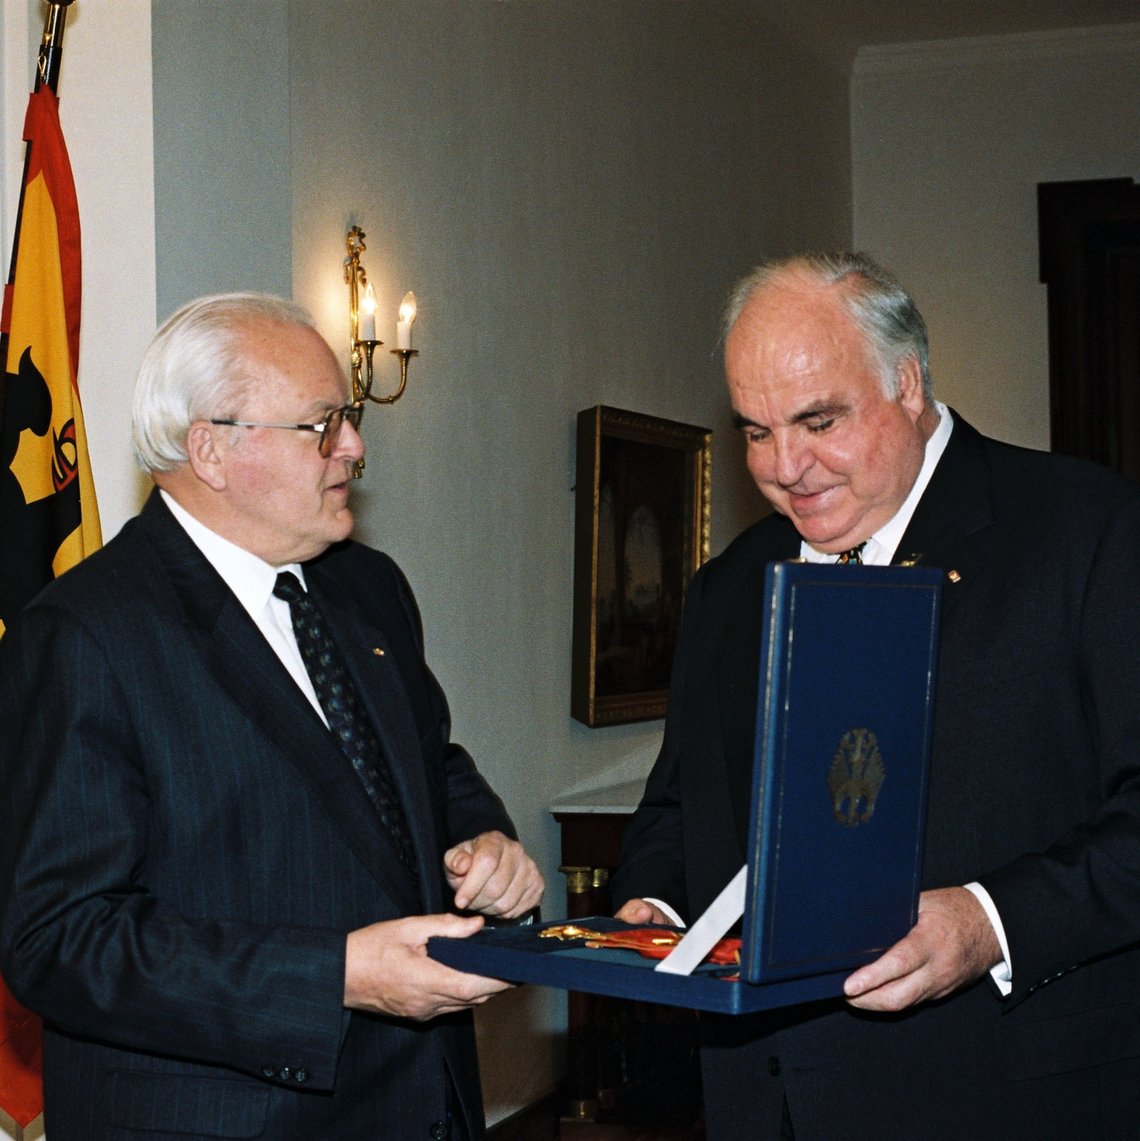 Aufnahme von Bundespräsident Roman Herzog und Helmut Kohl bei der Übergabe des Großkreuz